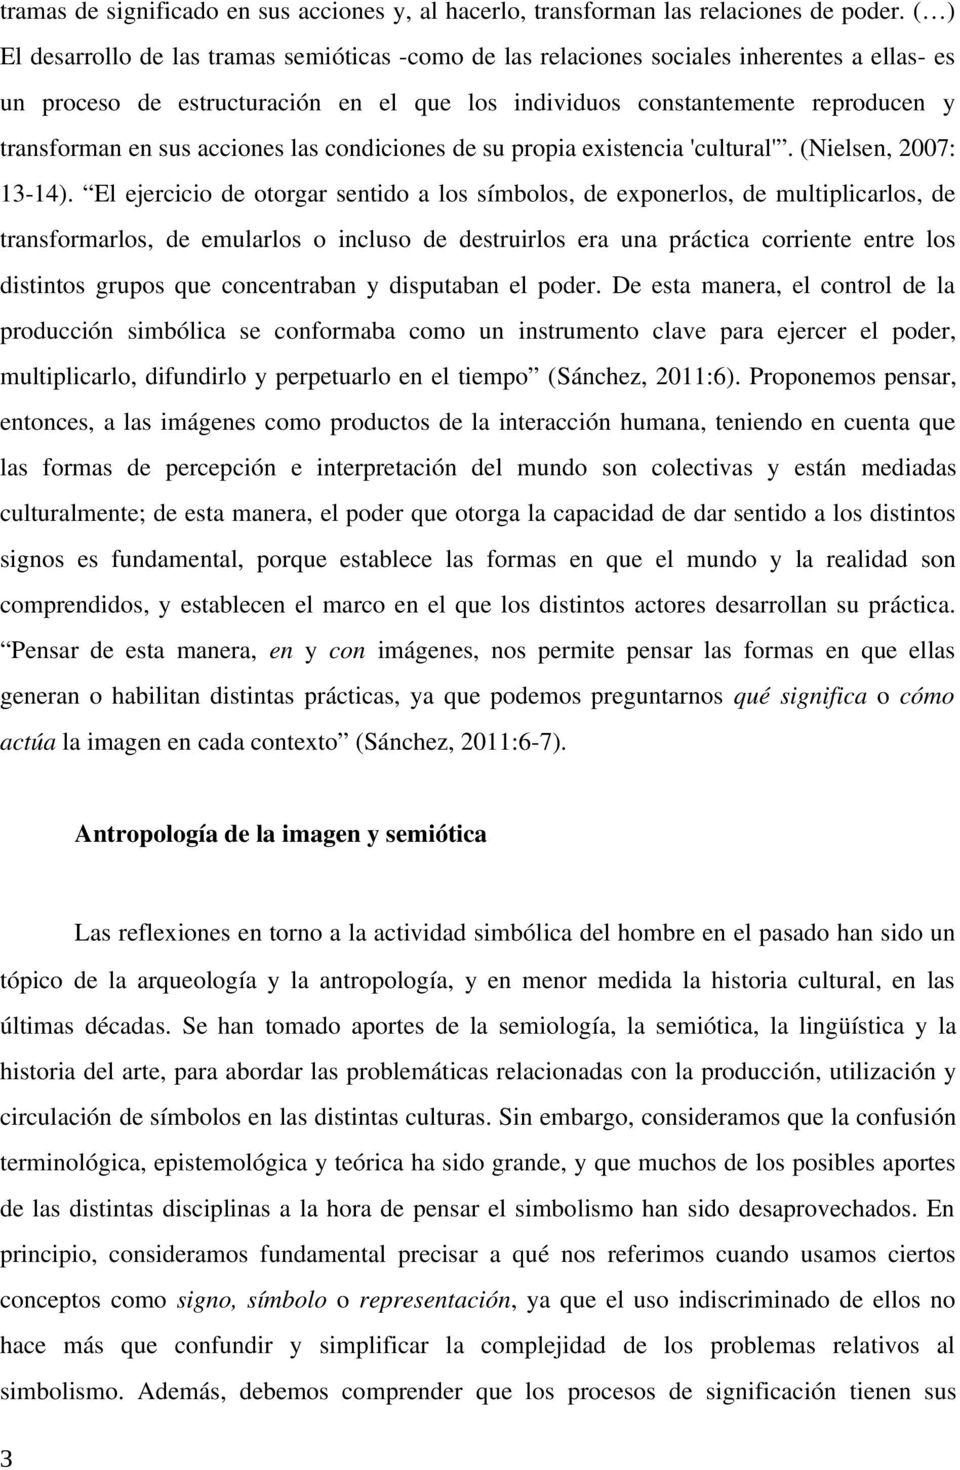 acciones las condiciones de su propia existencia 'cultural'. (Nielsen, 2007: 13-14).